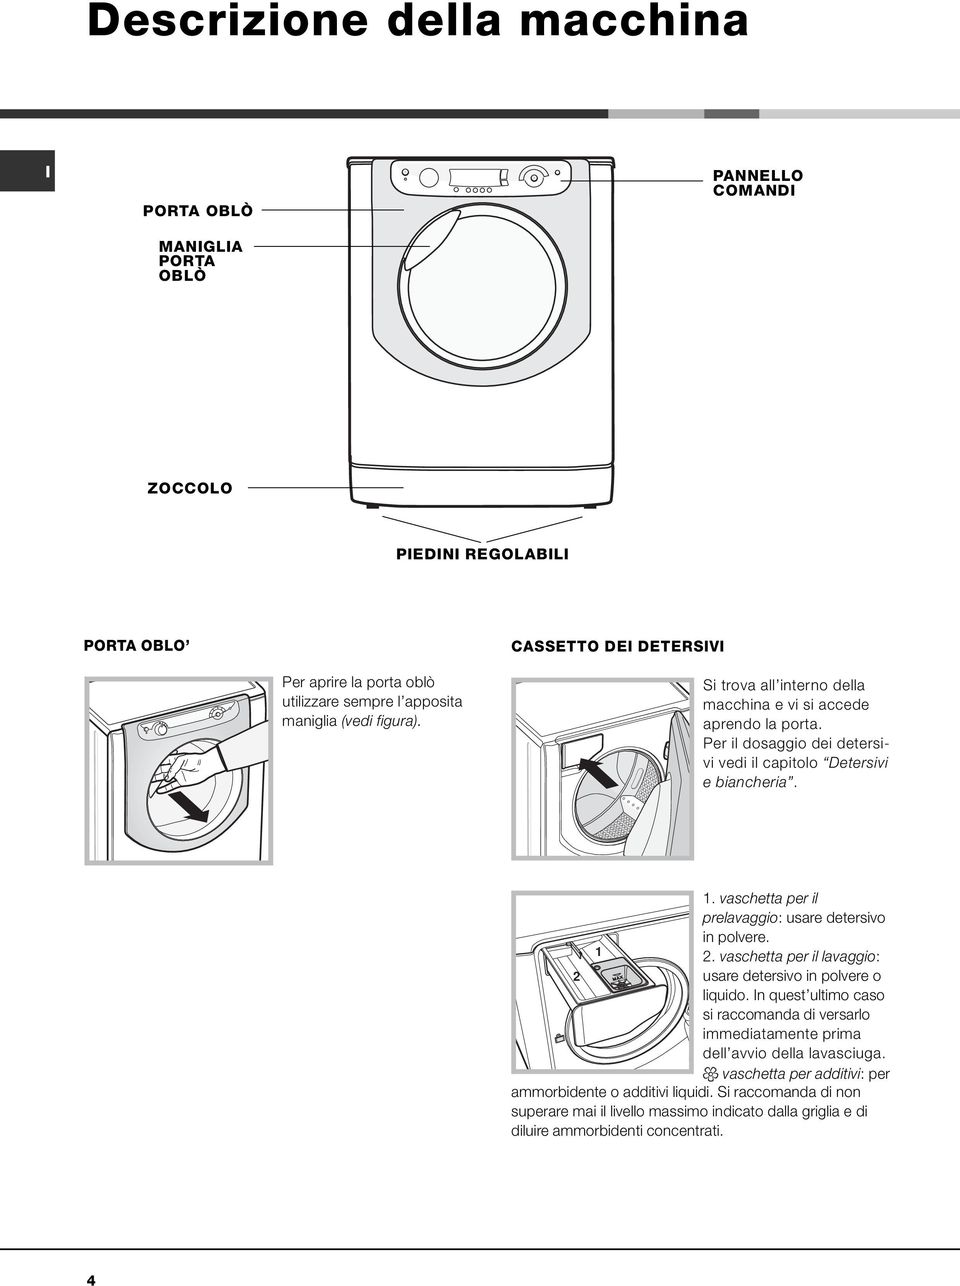 vaschetta per il prelavaggio: usare detersivo in polvere. 1 2. vaschetta per il lavaggio: 2 usare detersivo in polvere o liquido.